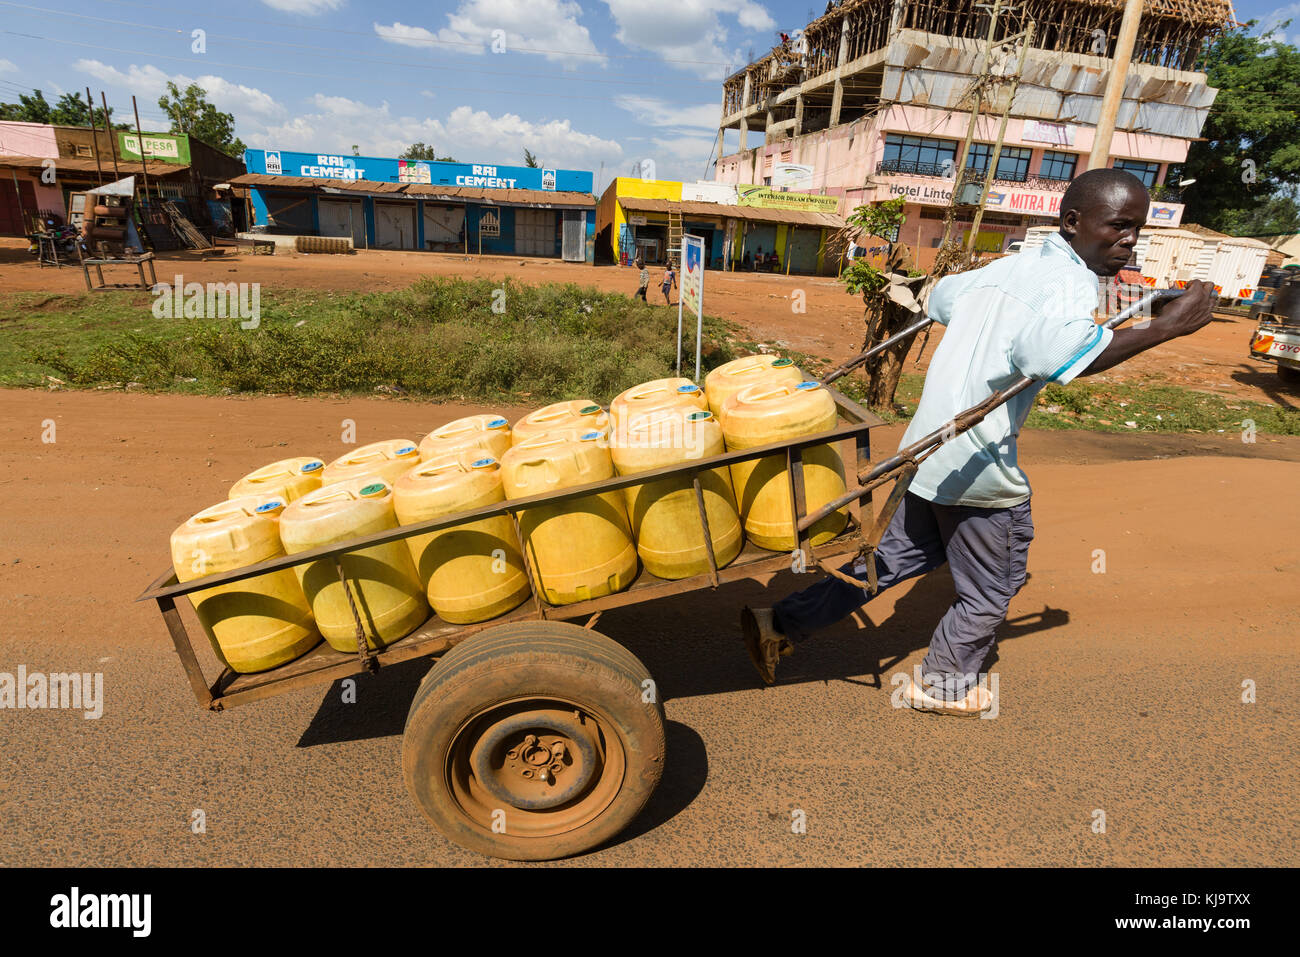 Un homme tire une charrette chargée de bidons d'eau en plastique jaune sur la route grâce à une petite ville, Kenya, Afrique de l'Est Banque D'Images